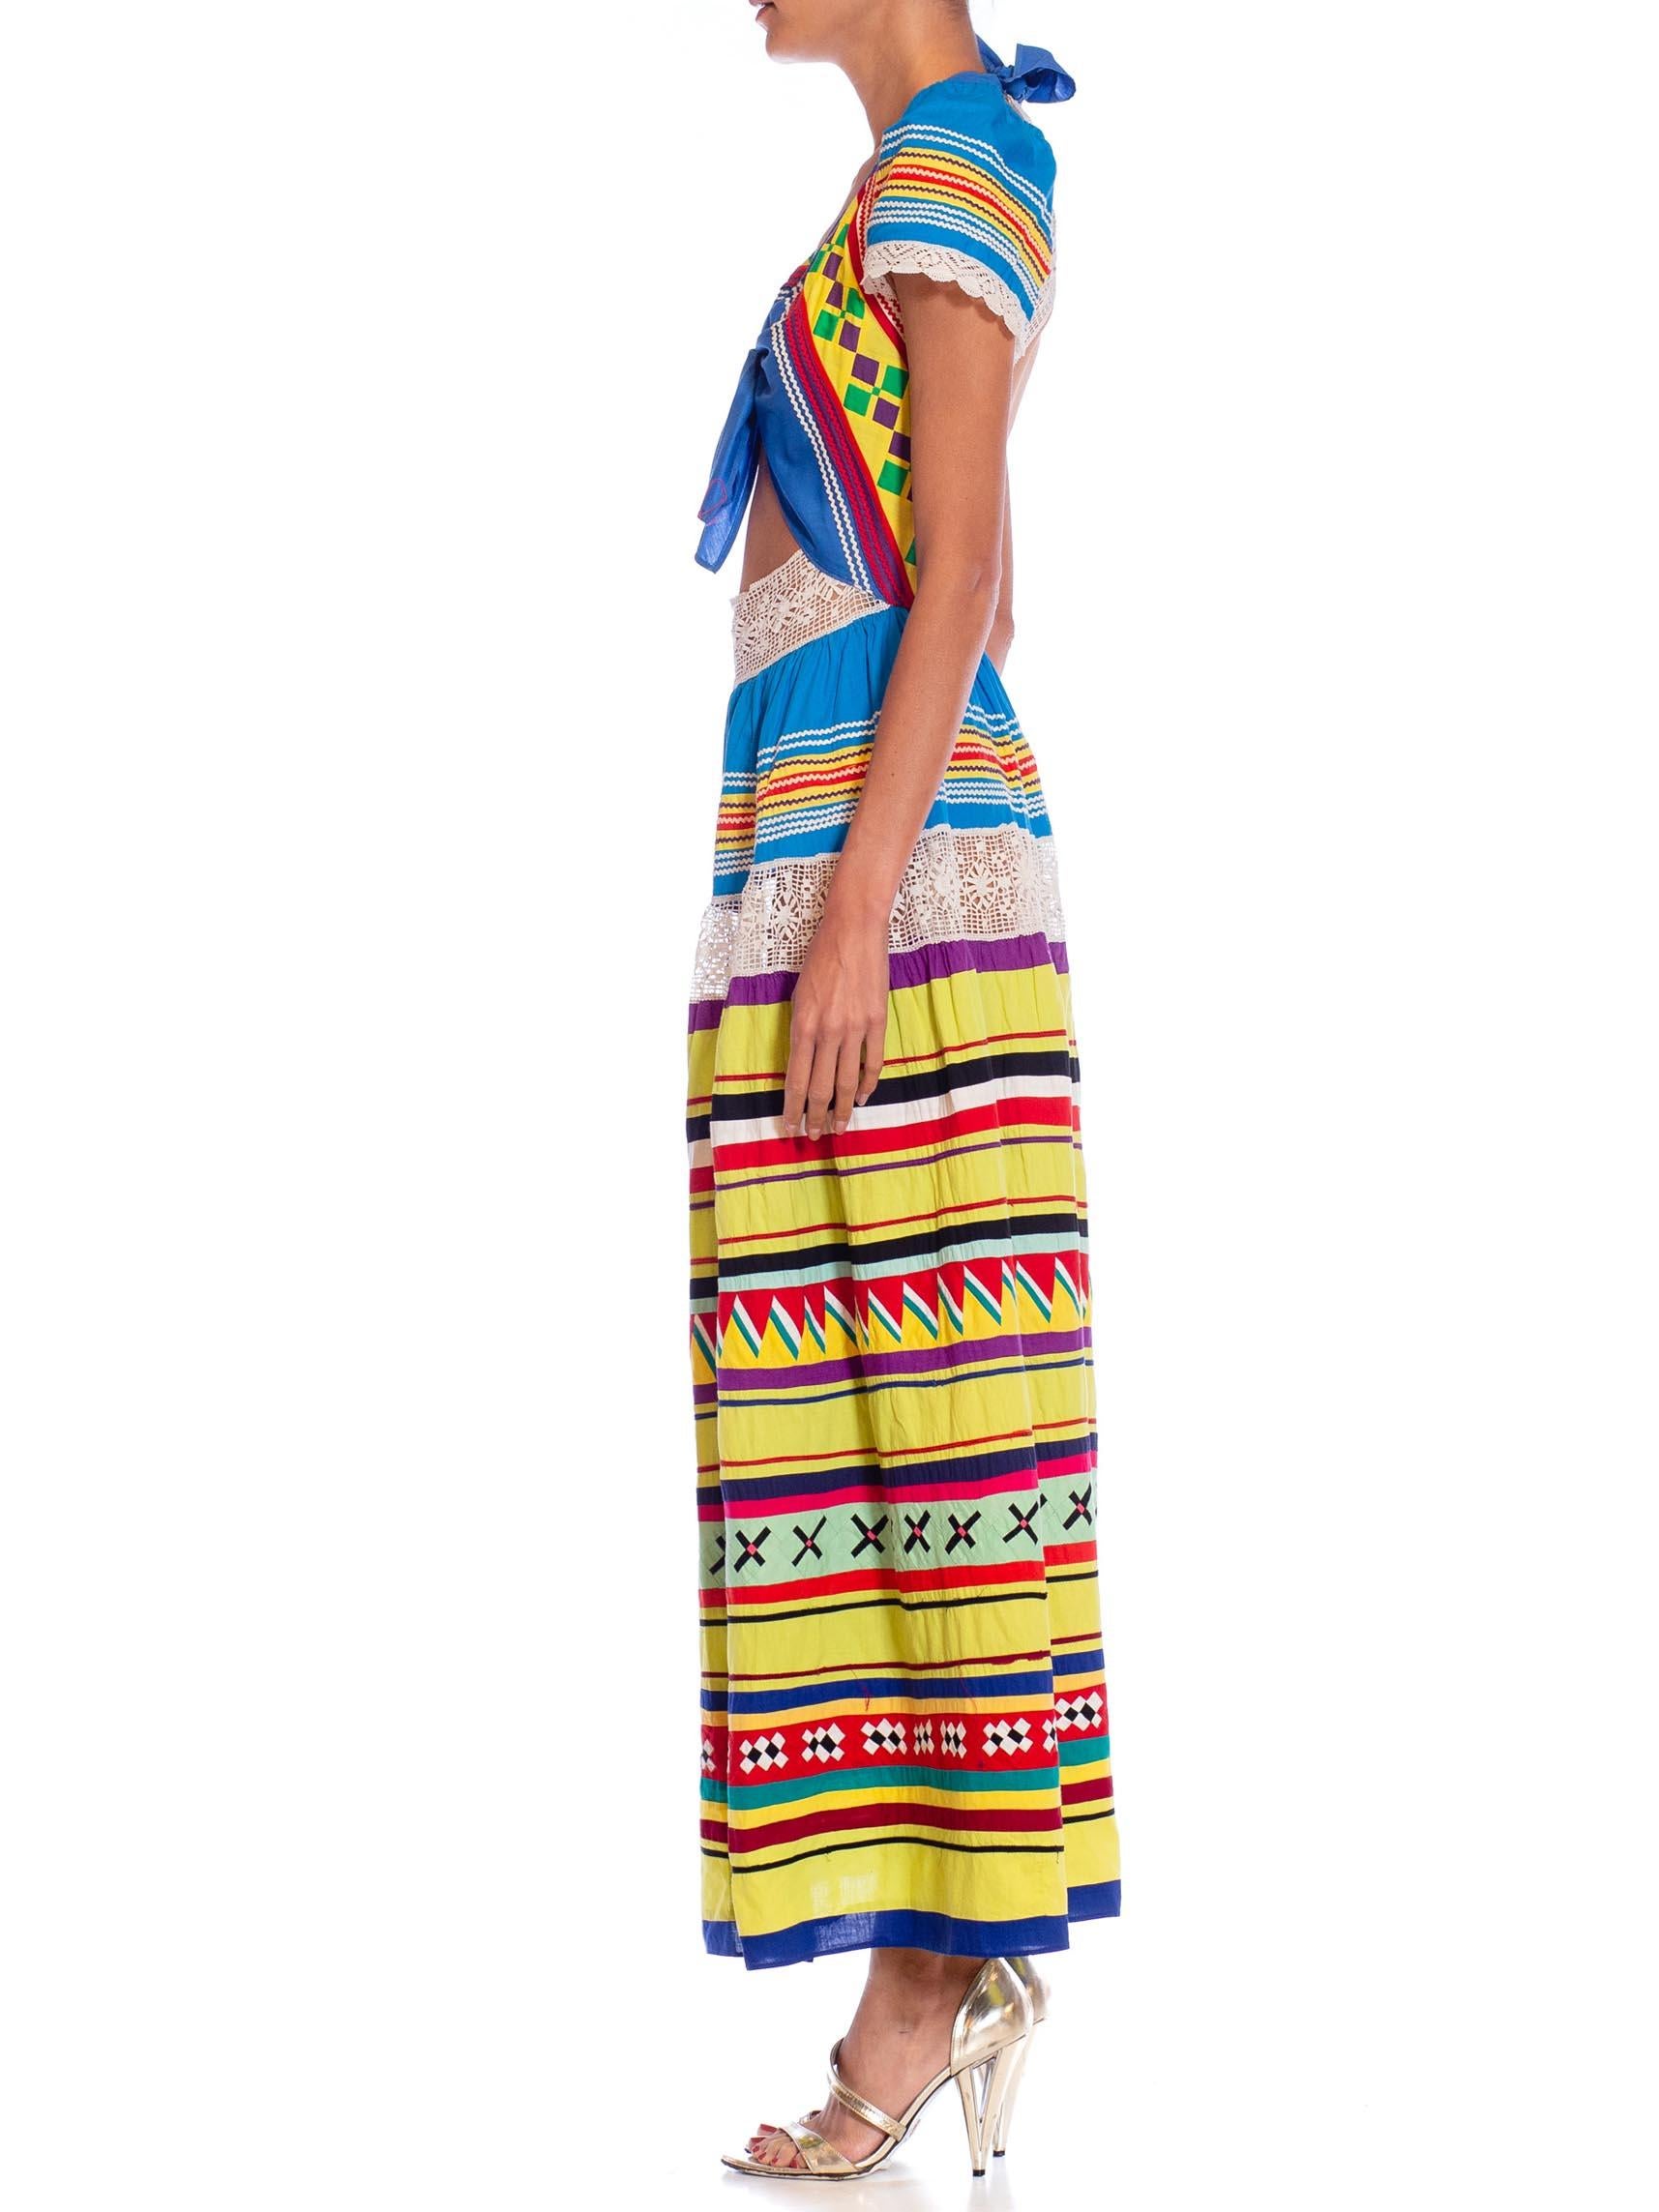 Cette robe est fabriquée à partir de pièces vintage des années 1940, 1950 et 1970. Fabriqué à l'origine par la tribu Seminole en Floride et vendu aux touristes qui visitaient la Floride à l'époque. Retravaillé avec respect et dentelle ancienne de